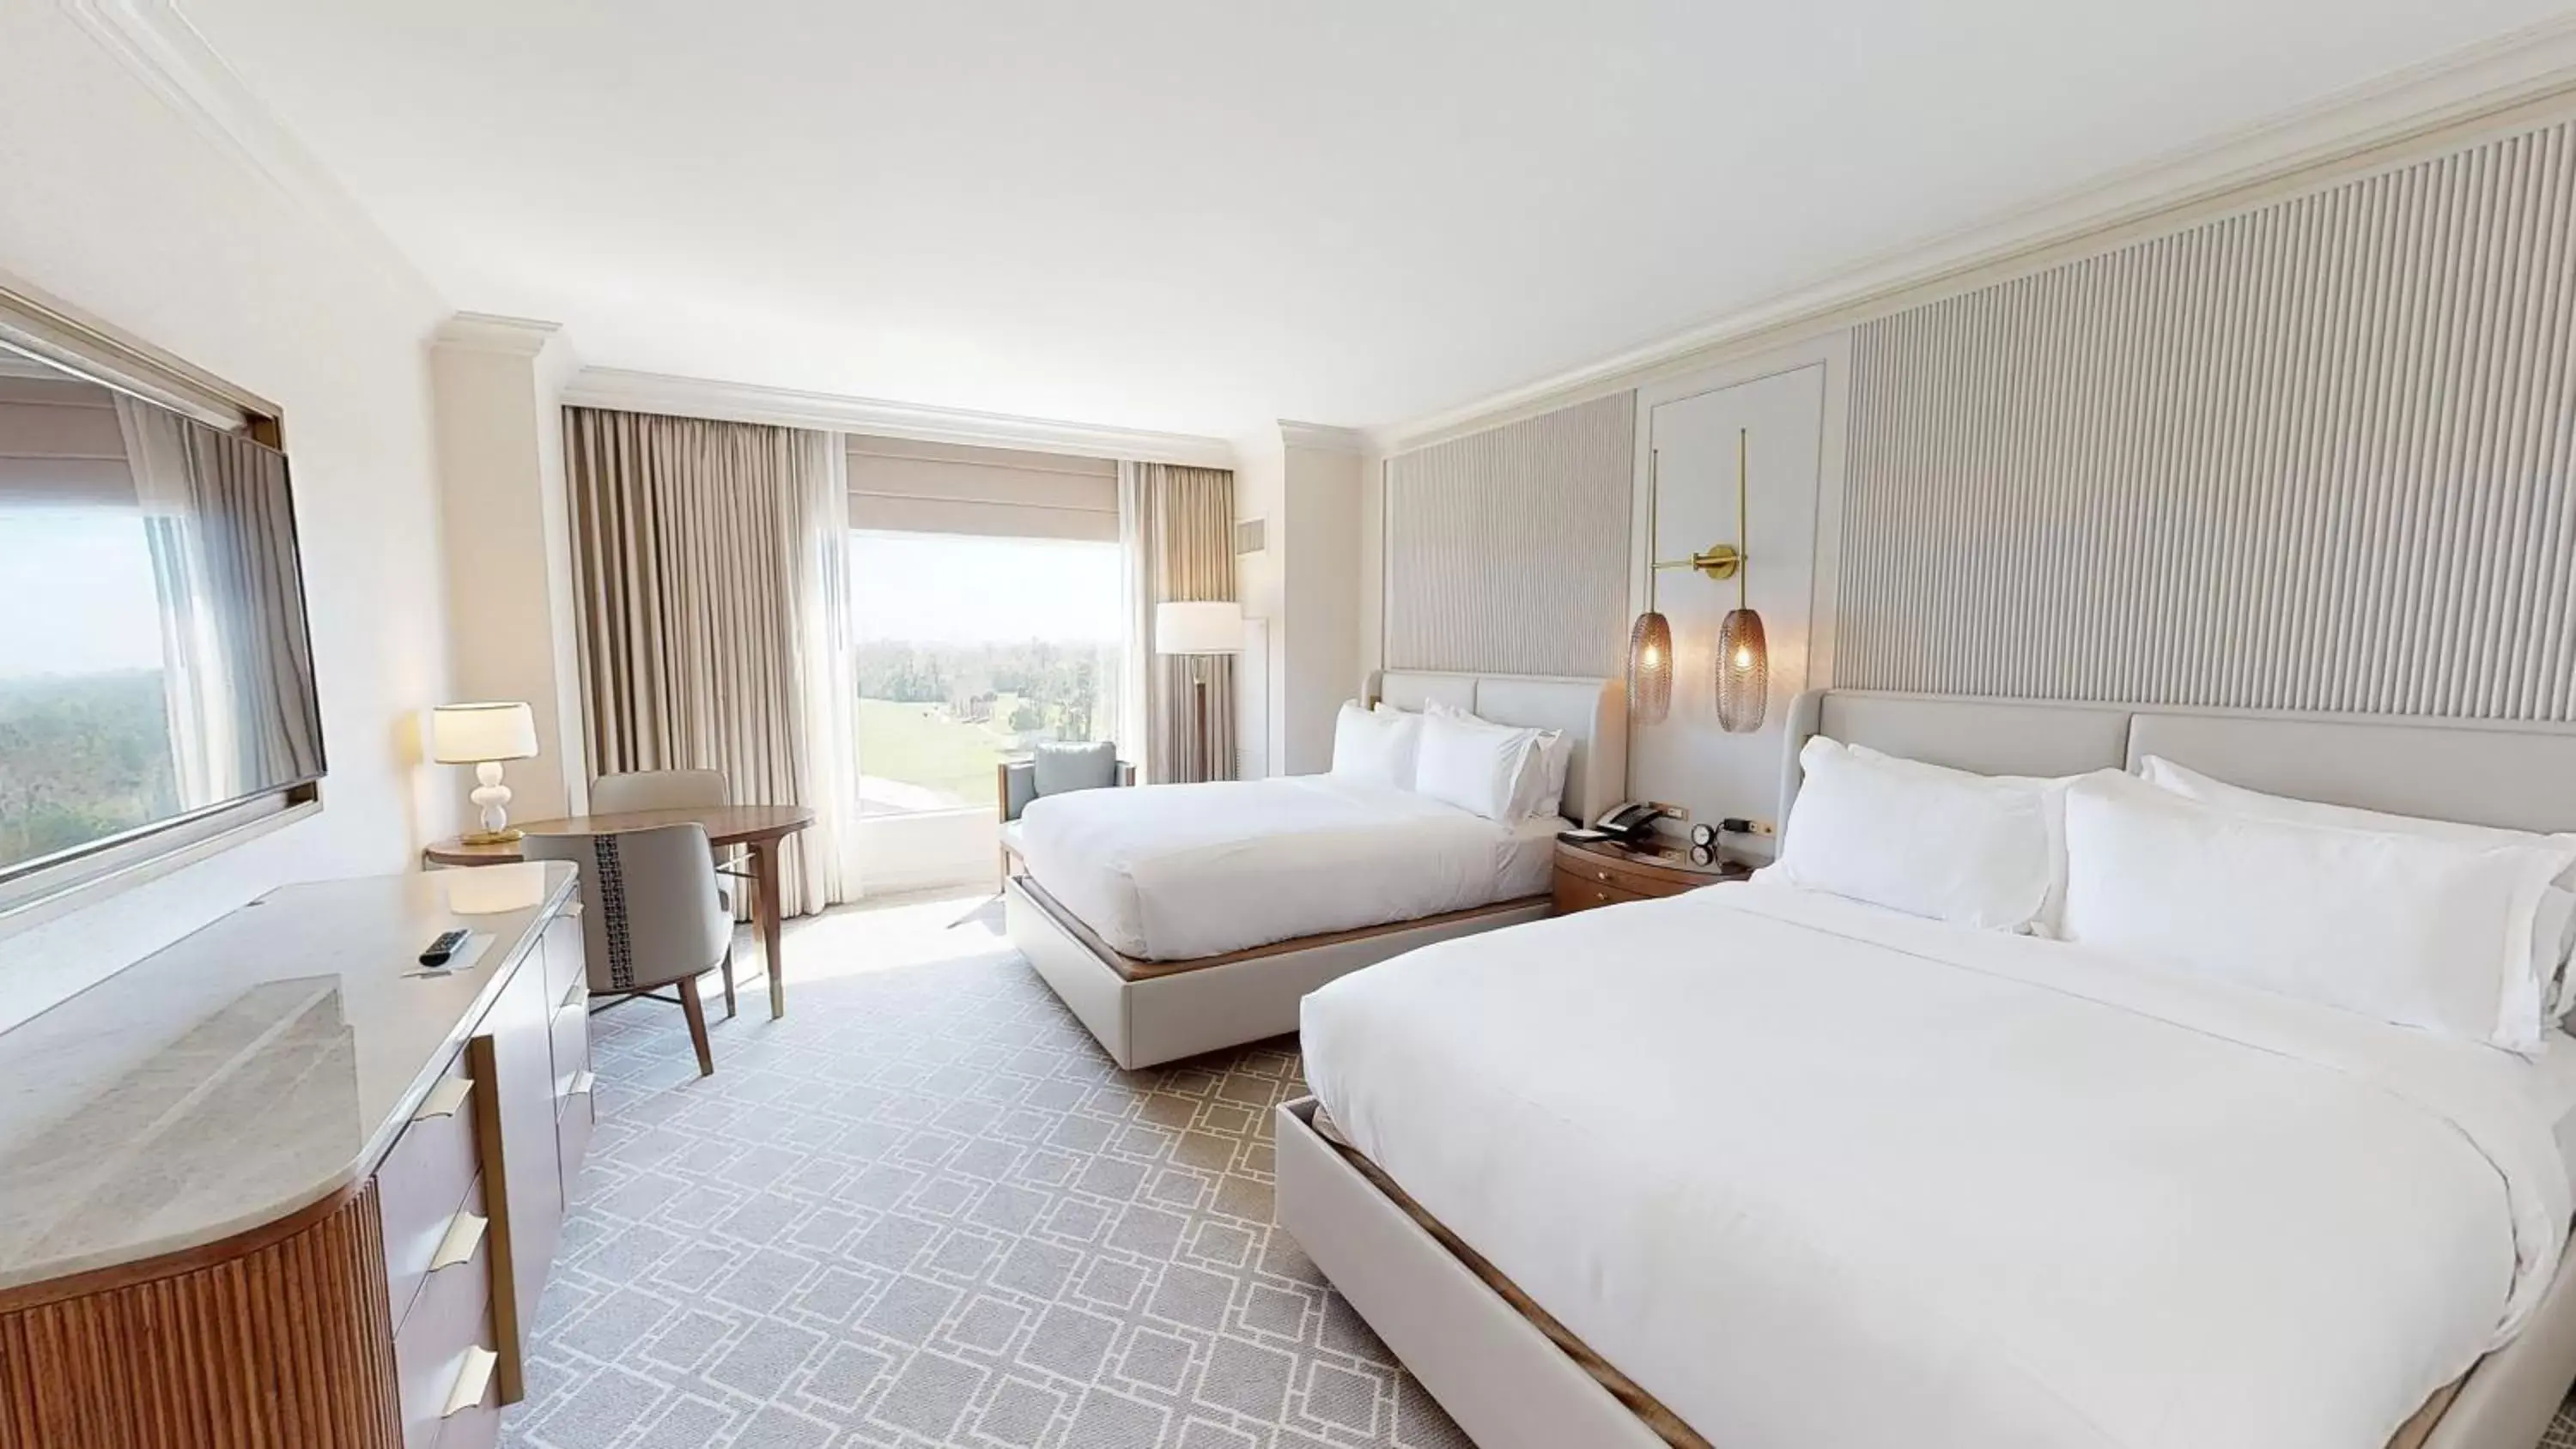 Deluxe Queen Room with Two Queen Beds - High Floor in Waldorf Astoria Orlando